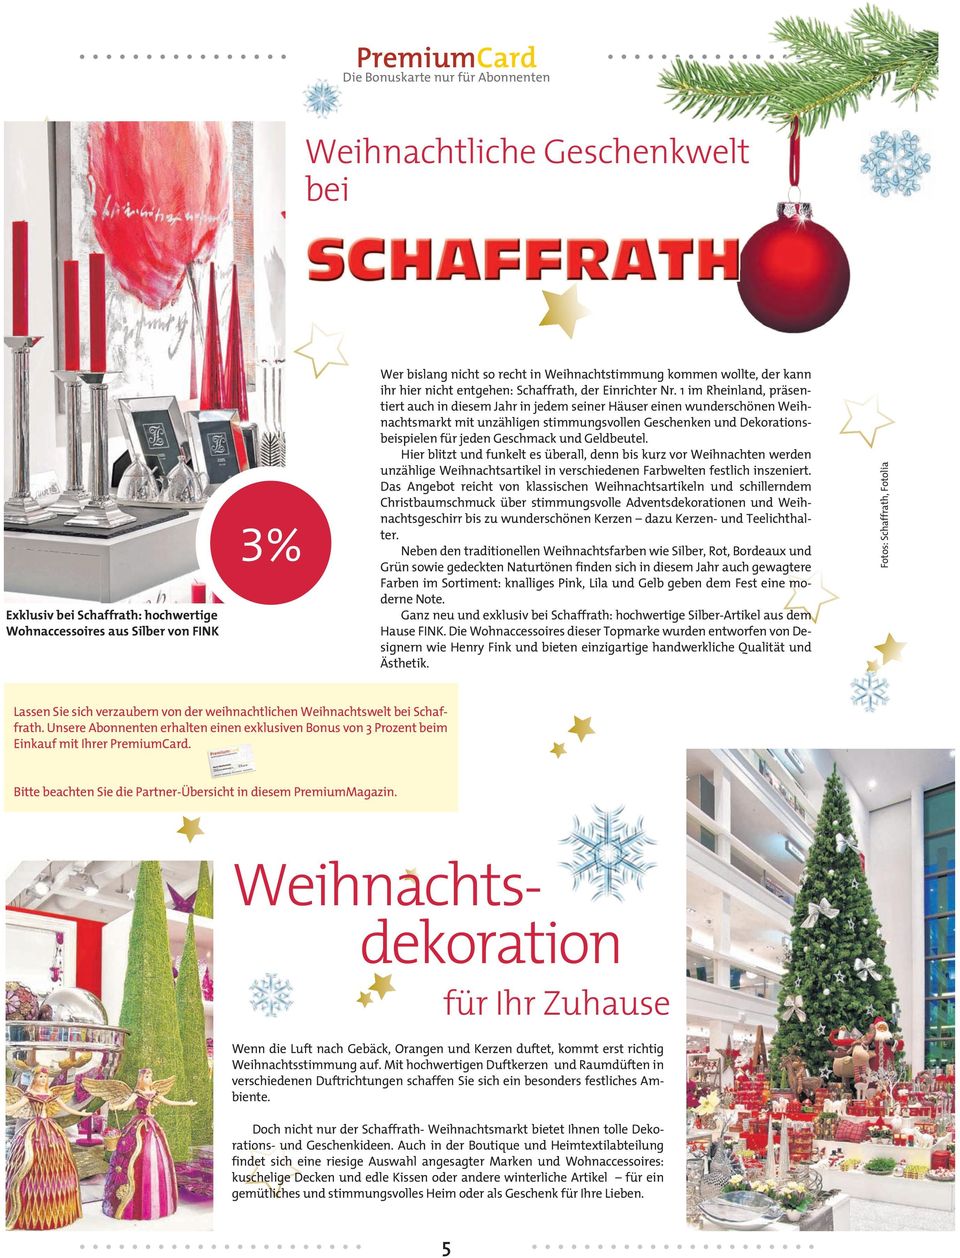 1 im Rheinland, präsentiert auch in diesem Jahr in jedem seiner Häuser einen wunderschönen Weihnachtsmarkt mit unzähligen stimmungsvollen Geschenken und Dekorationsbeispielen für jeden Geschmack und